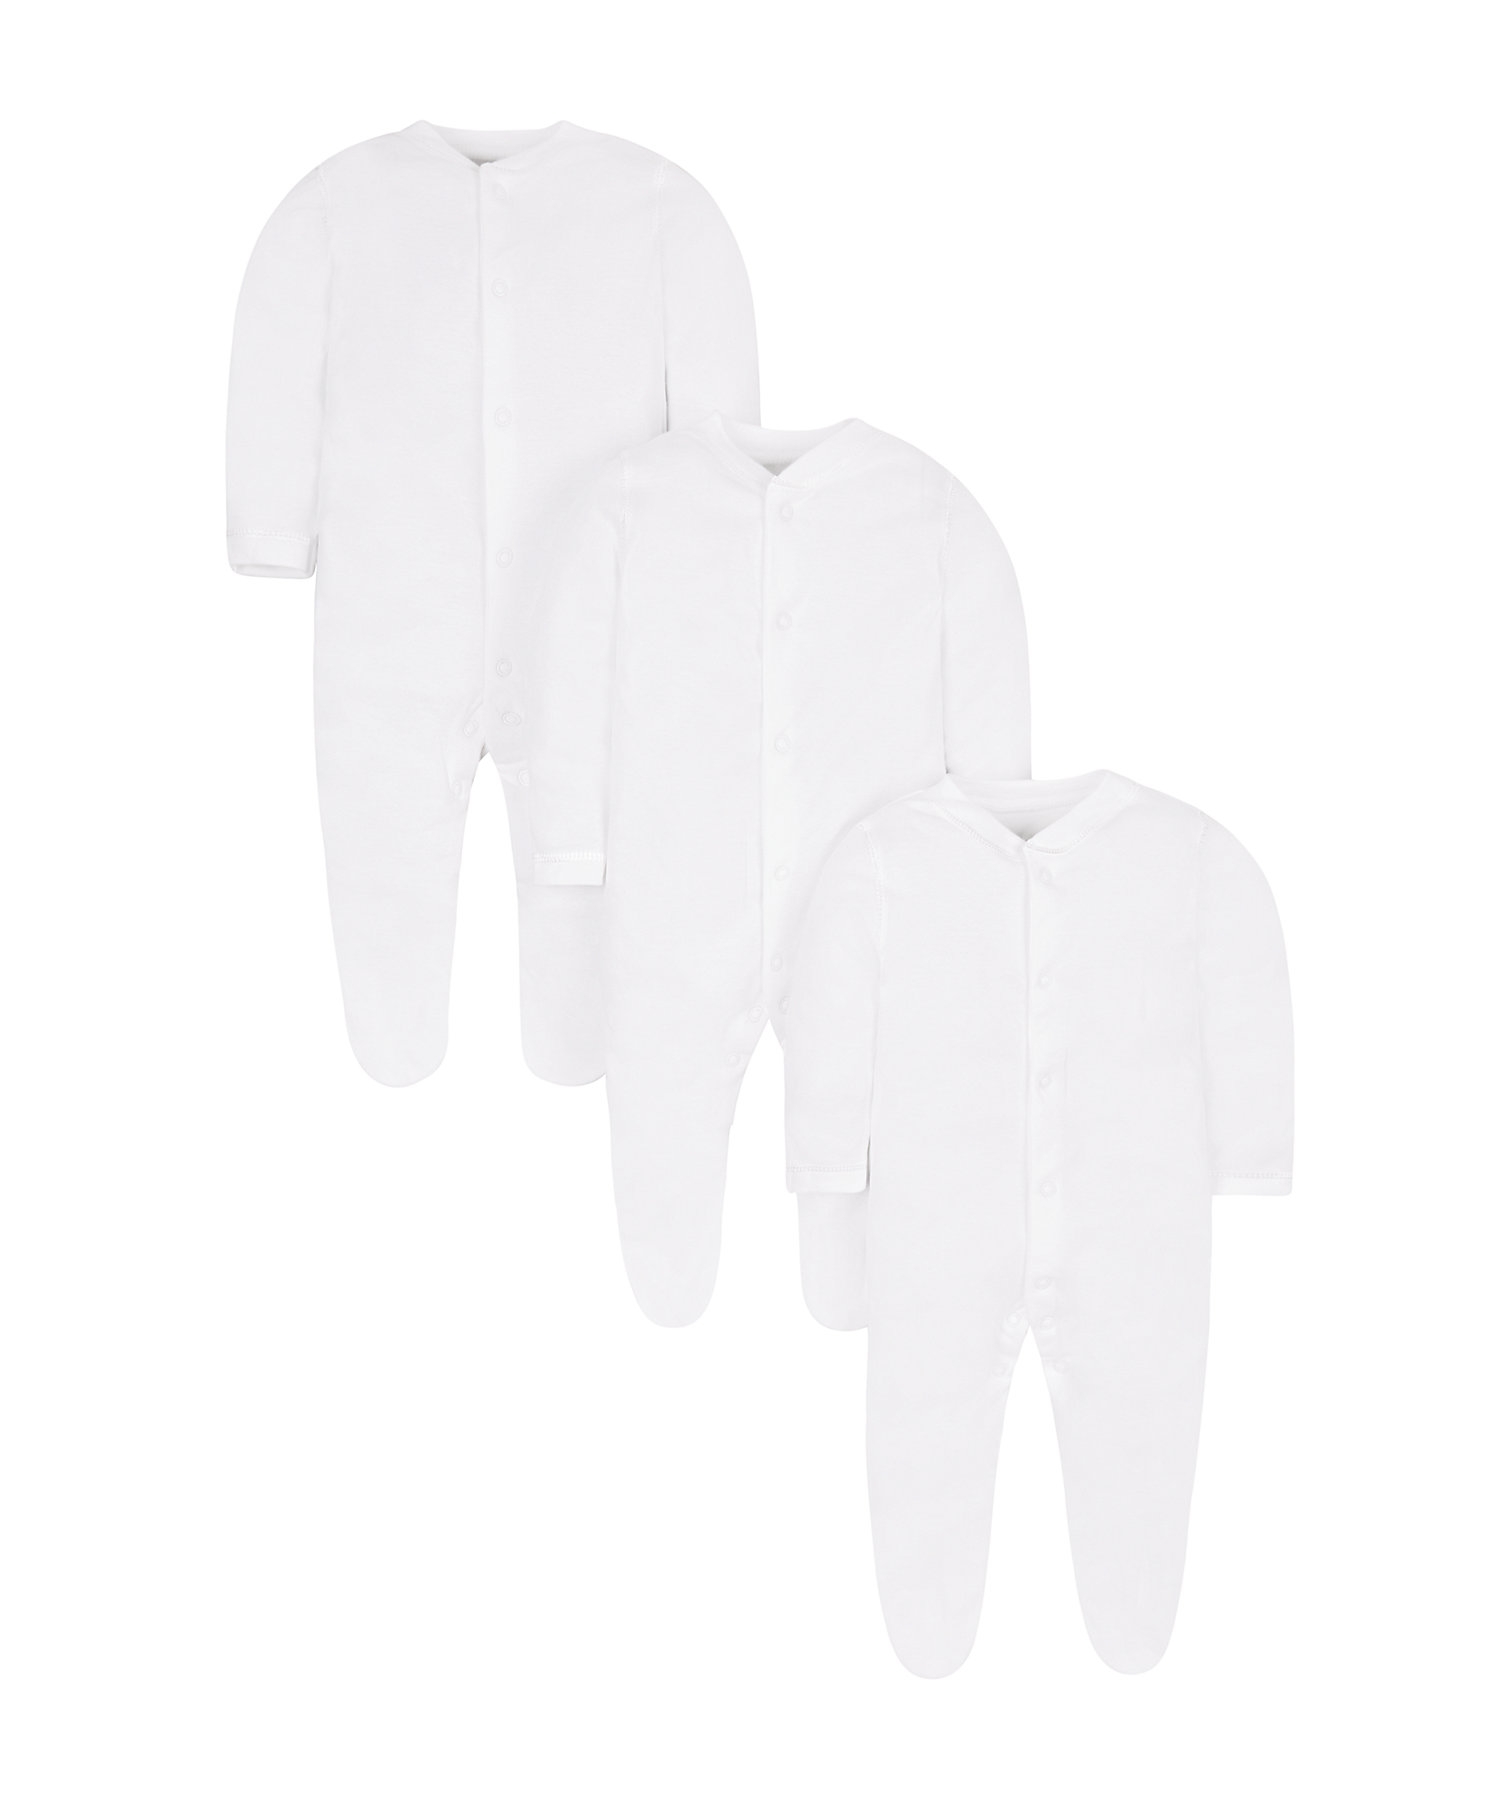 Unisex Full Sleeves Sleepsuit - Pack Of 3 - White